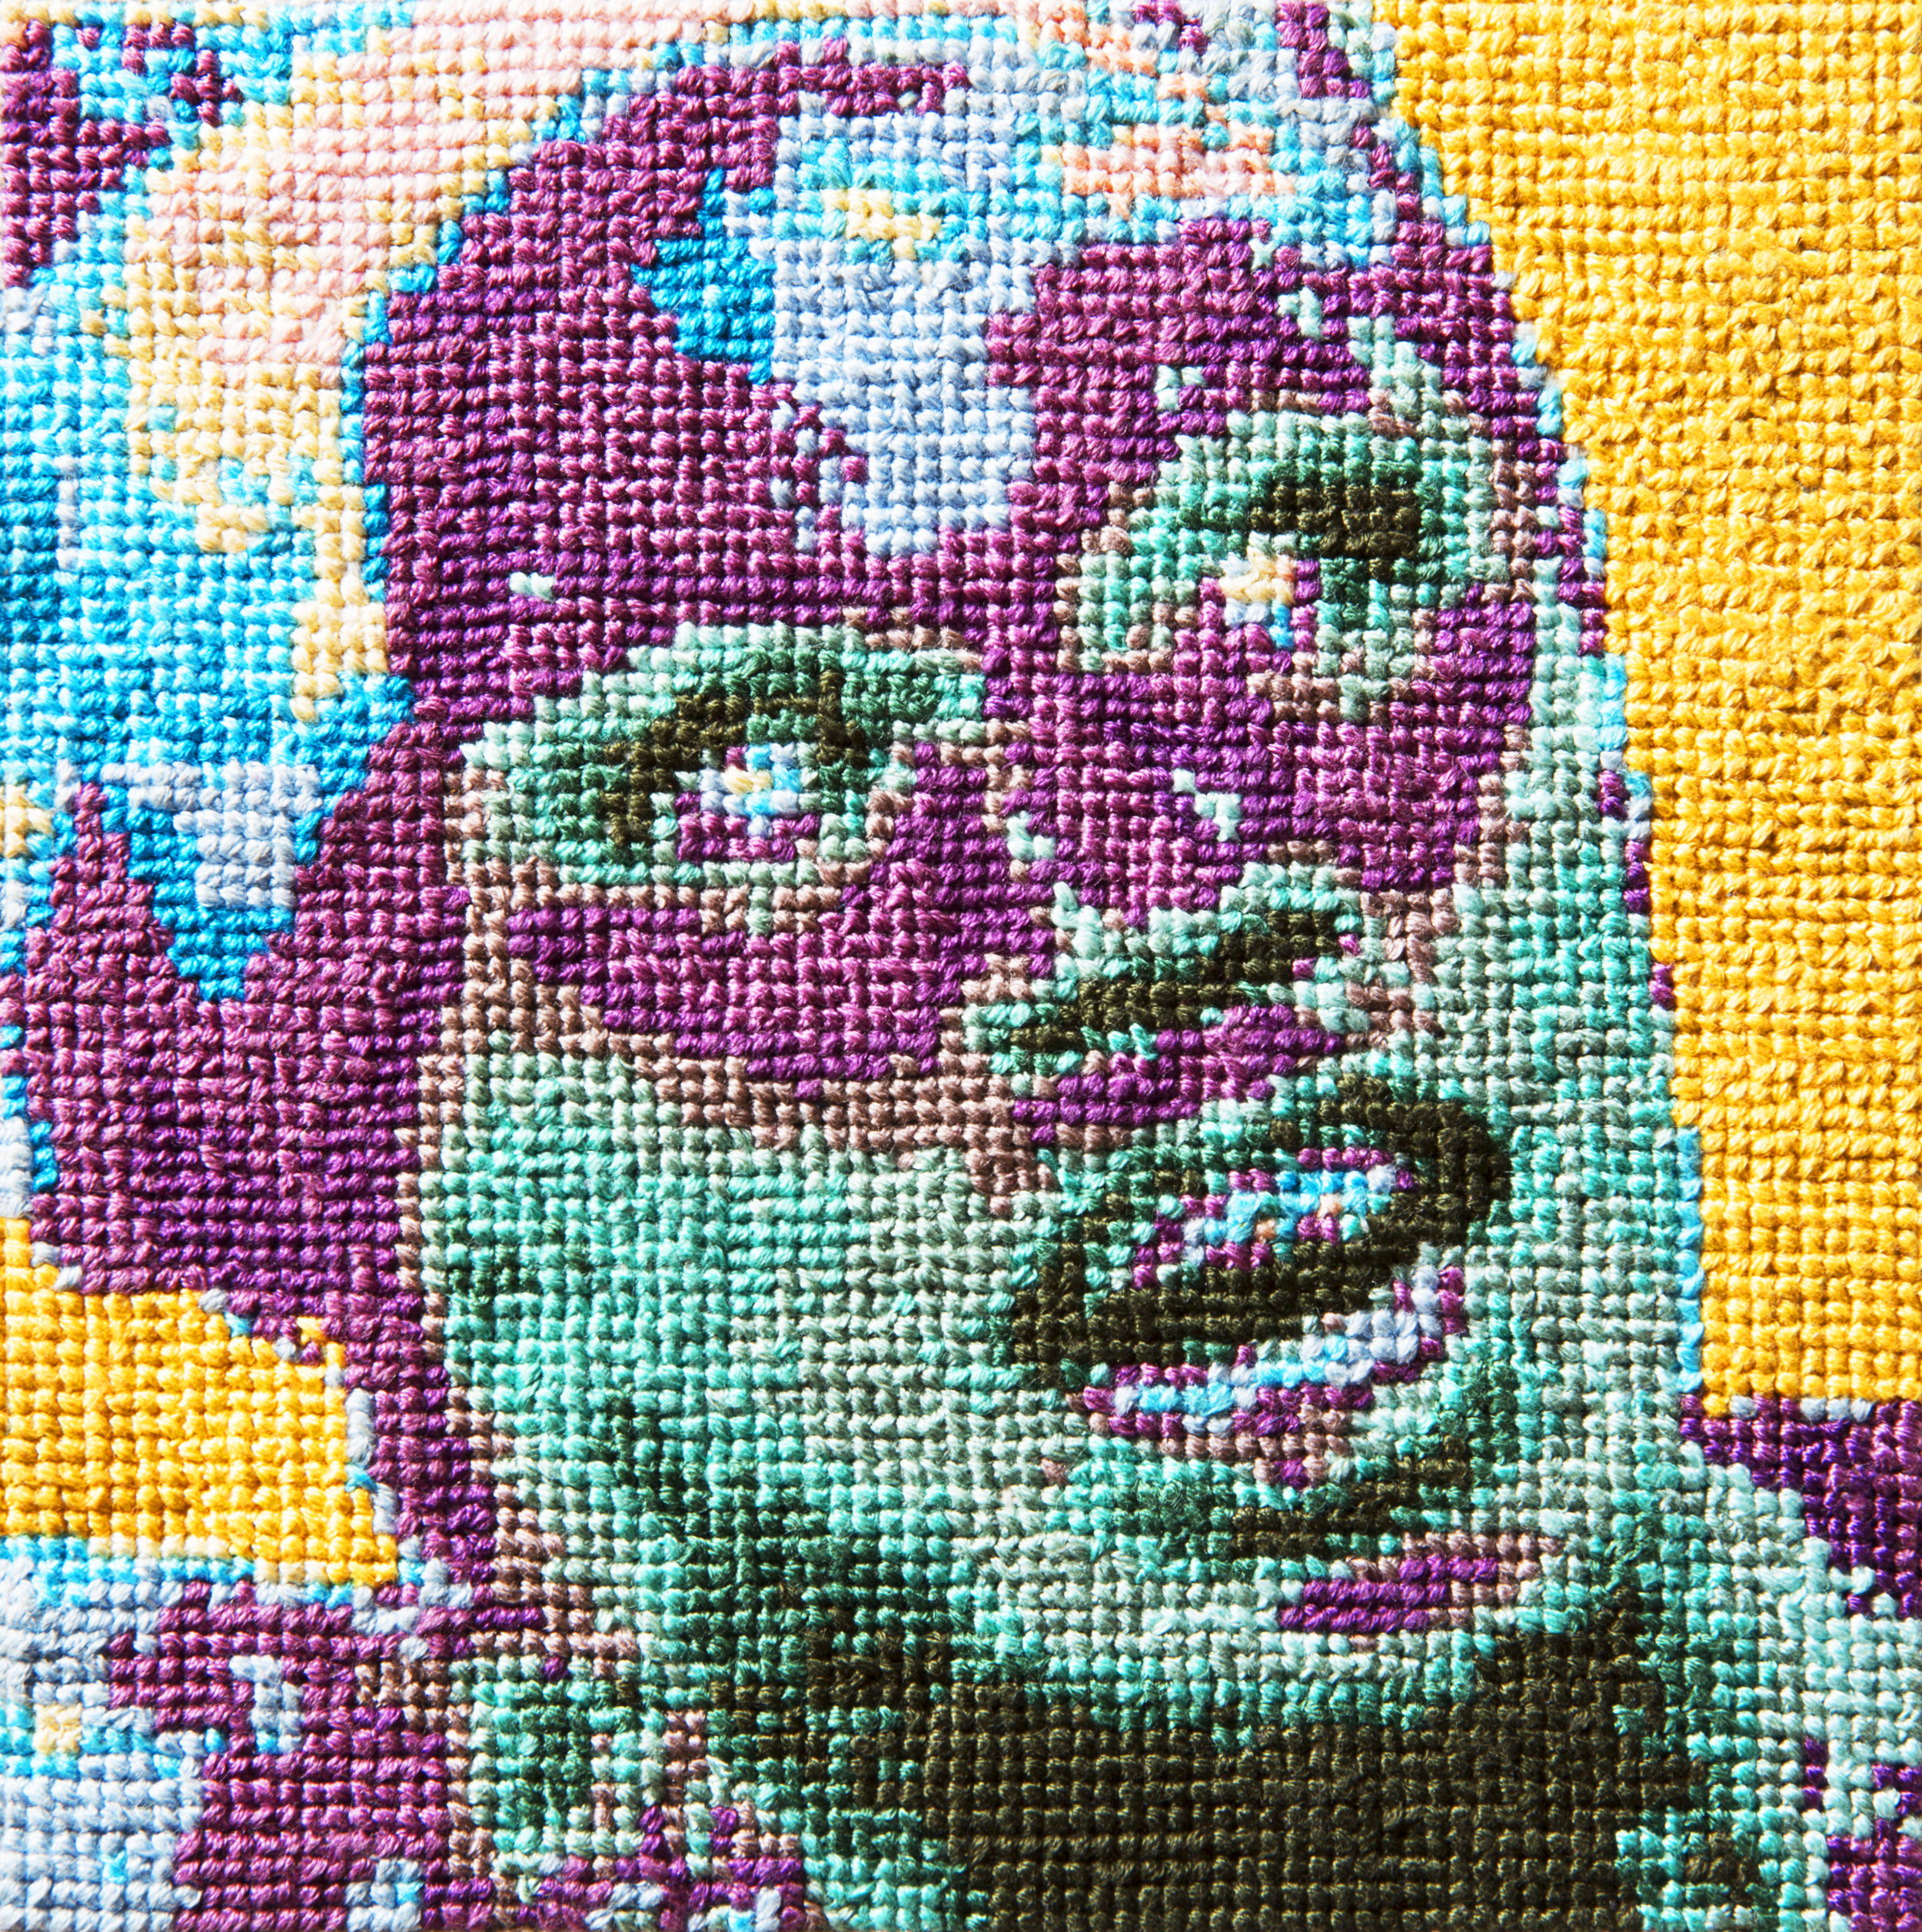   Frame 18   By Jared Dawson  5 x 5 inches  Cotton thread on aida cloth  2013 